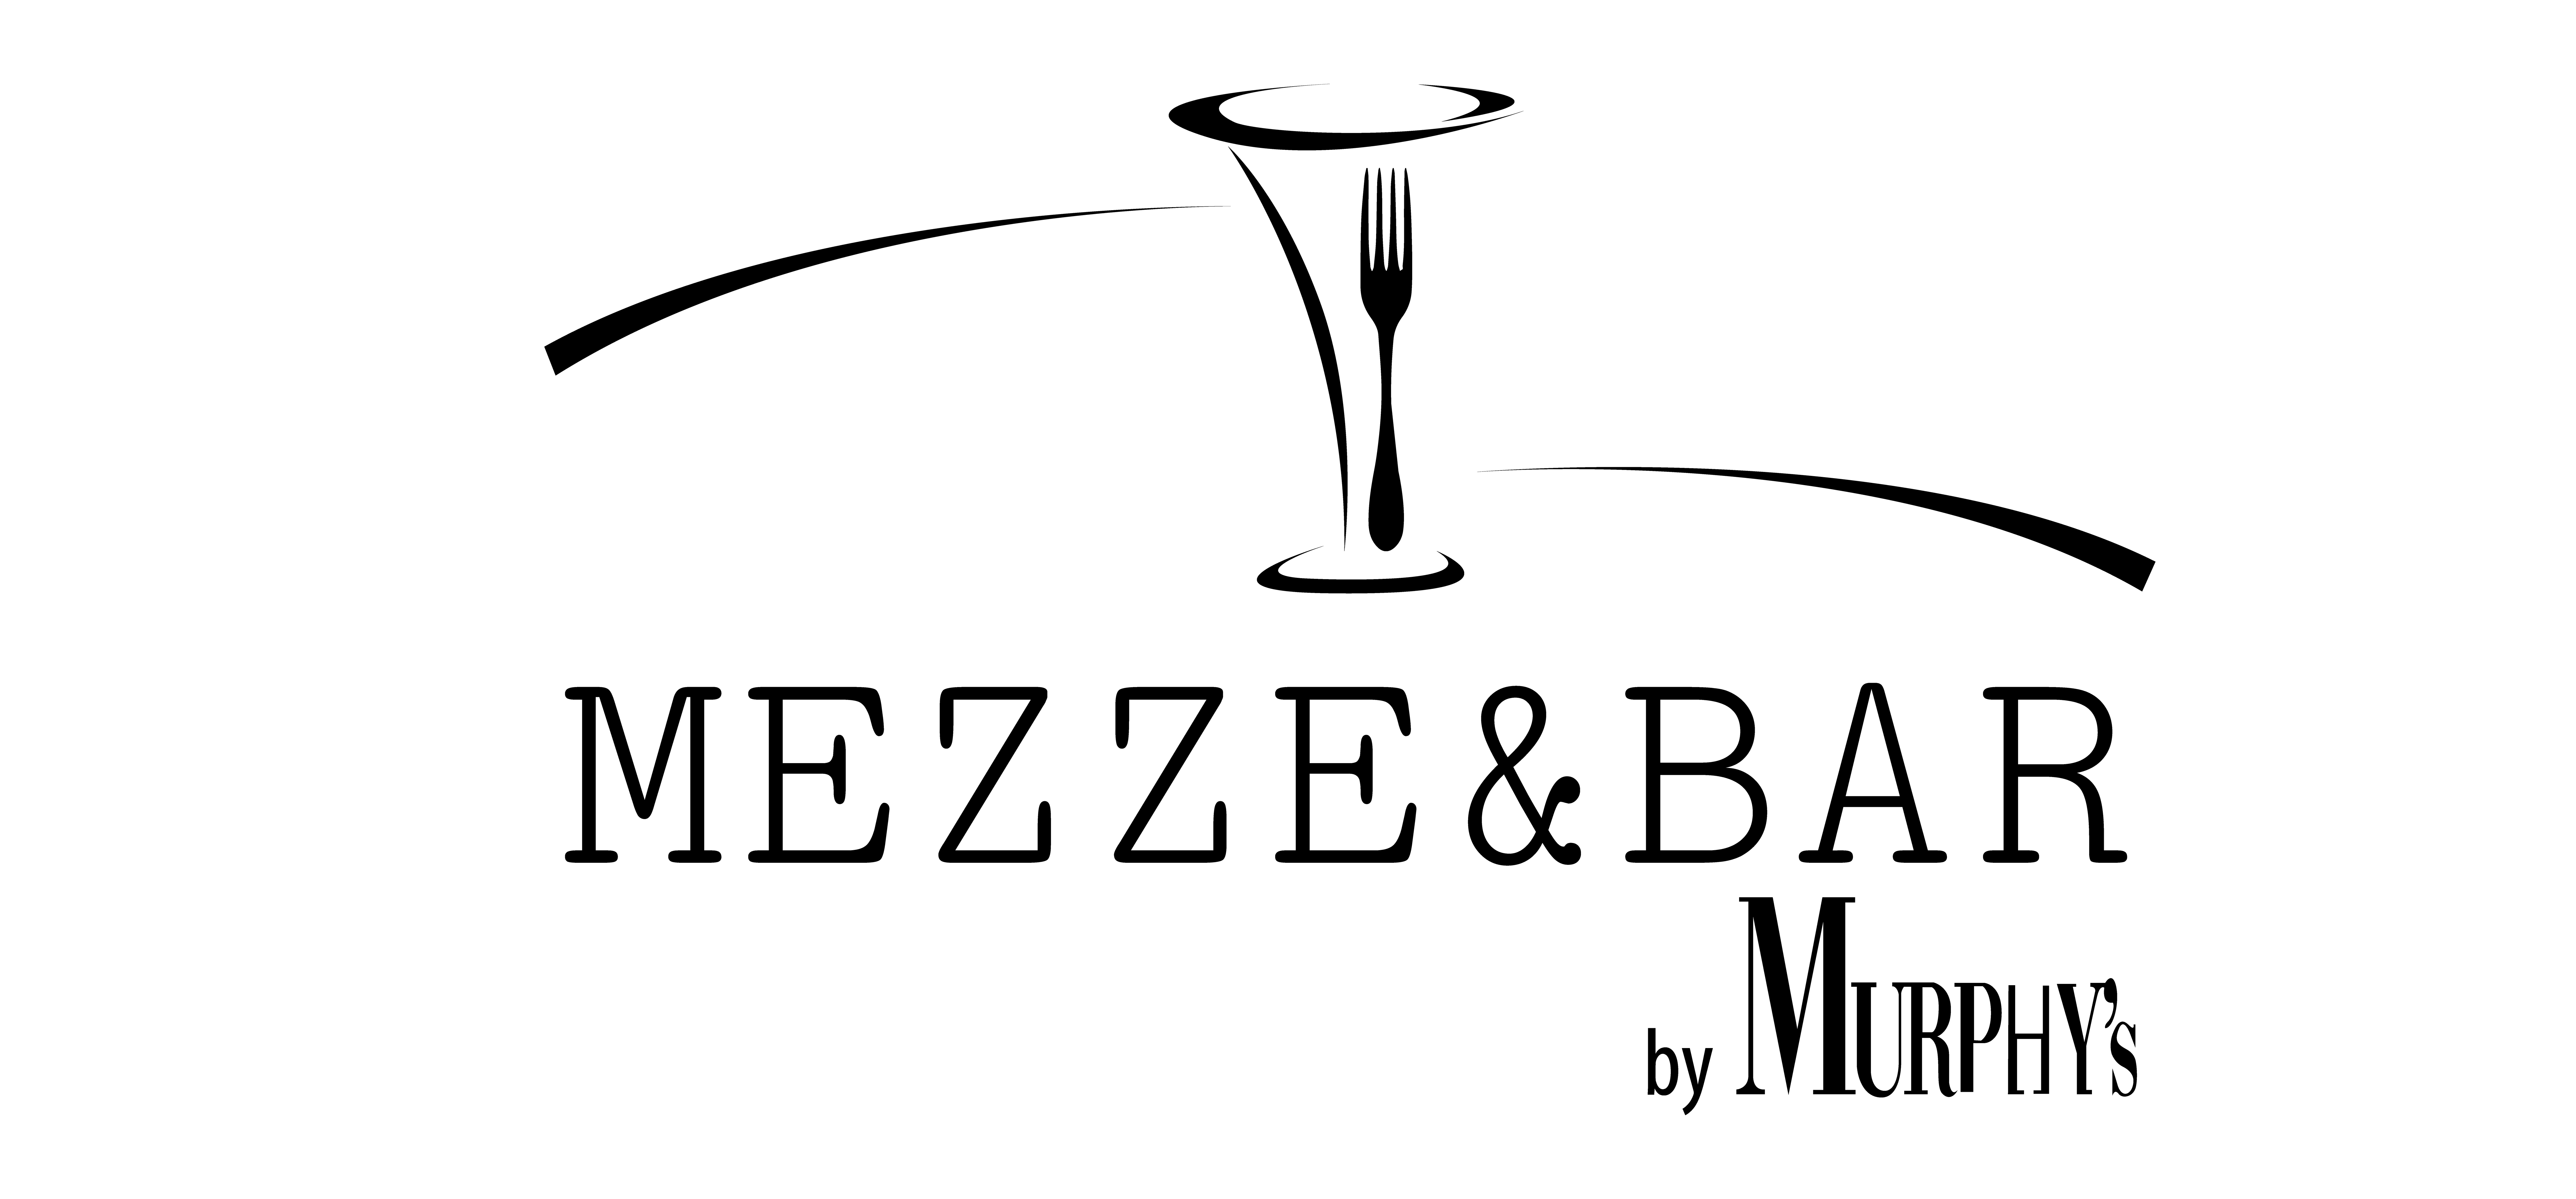 MEZZE&BAR by MURPHY'sde 19.00 - 23.00 Lezziz mezeler, sakin müzik 23.00 - 04.00 Türkçe Dj. müziği ile eğlence. Bugün, yarın %20 indirim.0533 290 0107